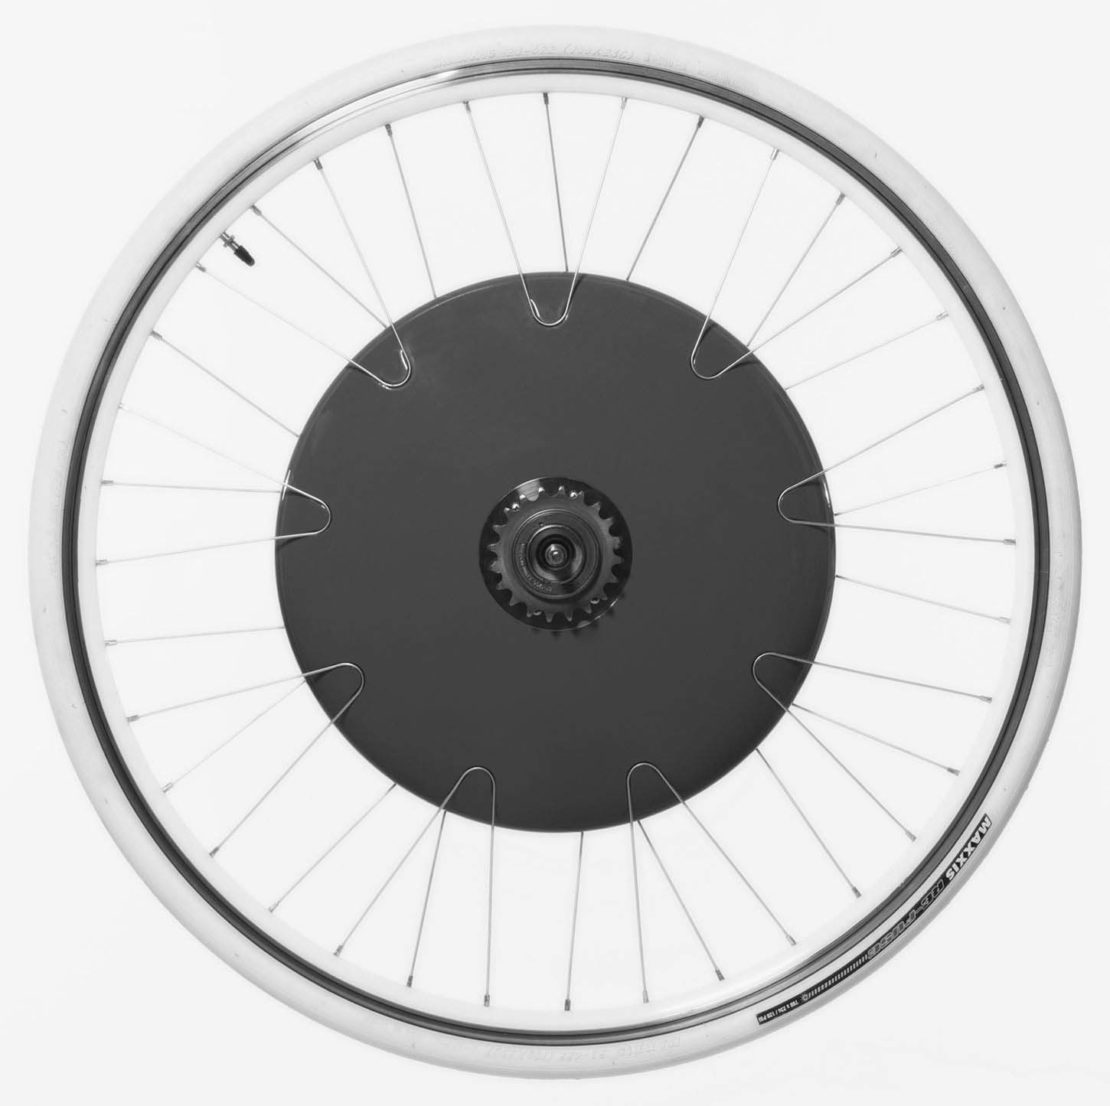 The smart Copenhagen Wheel